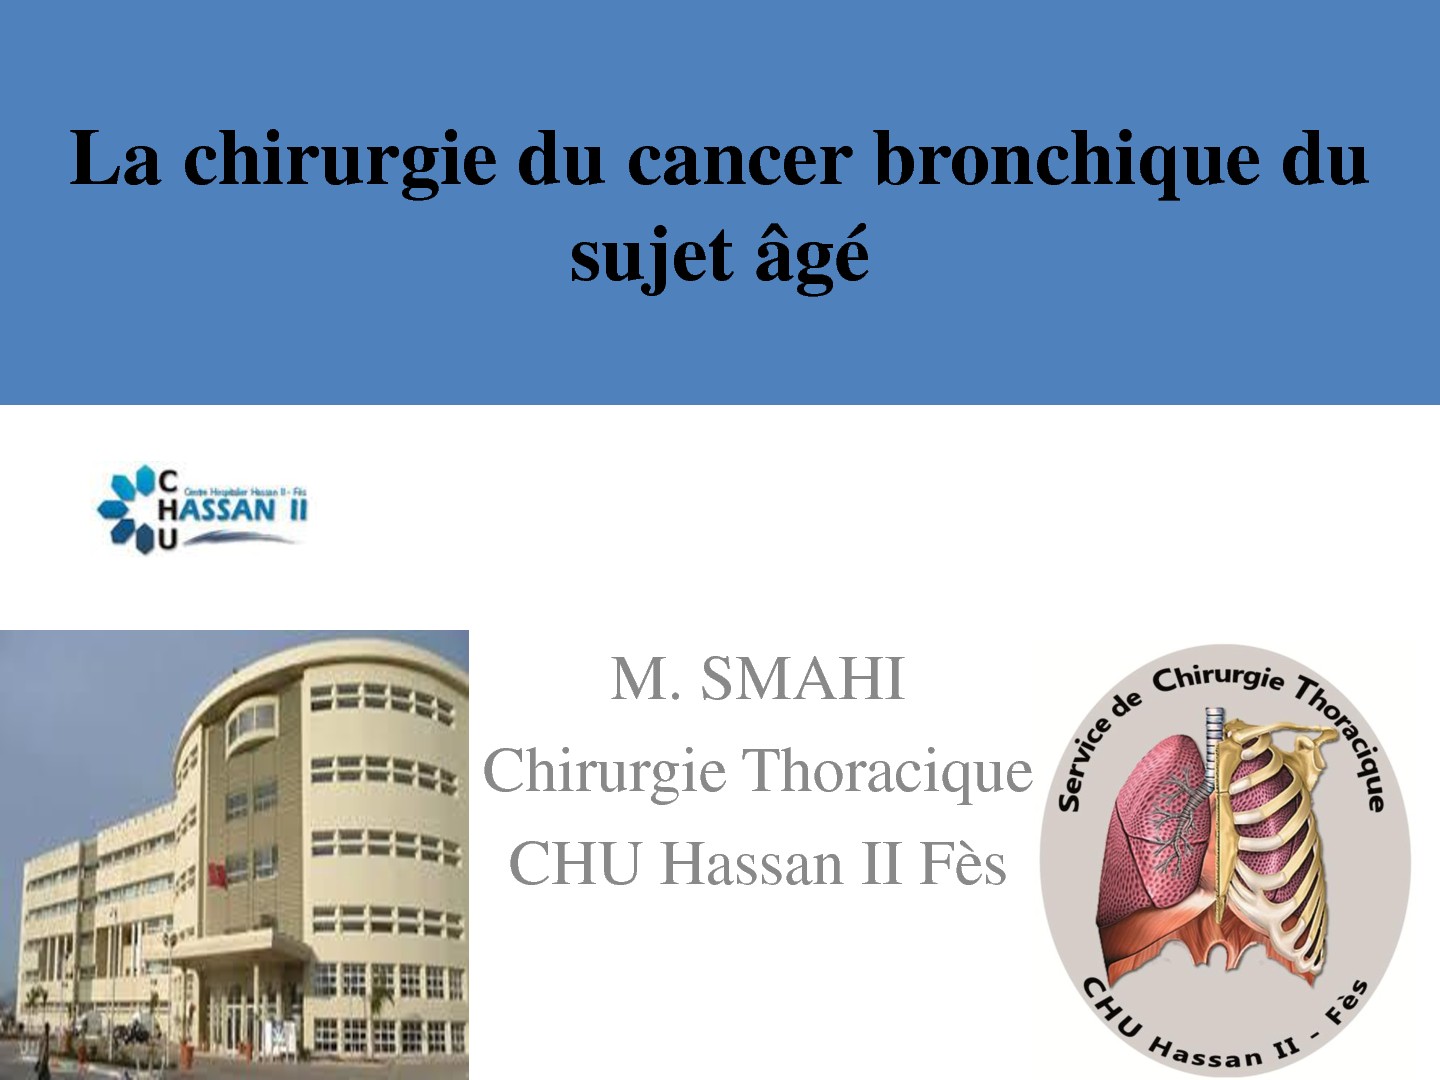 La chirurgie du cancer bronchique du sujet âgé. M. SMAHI